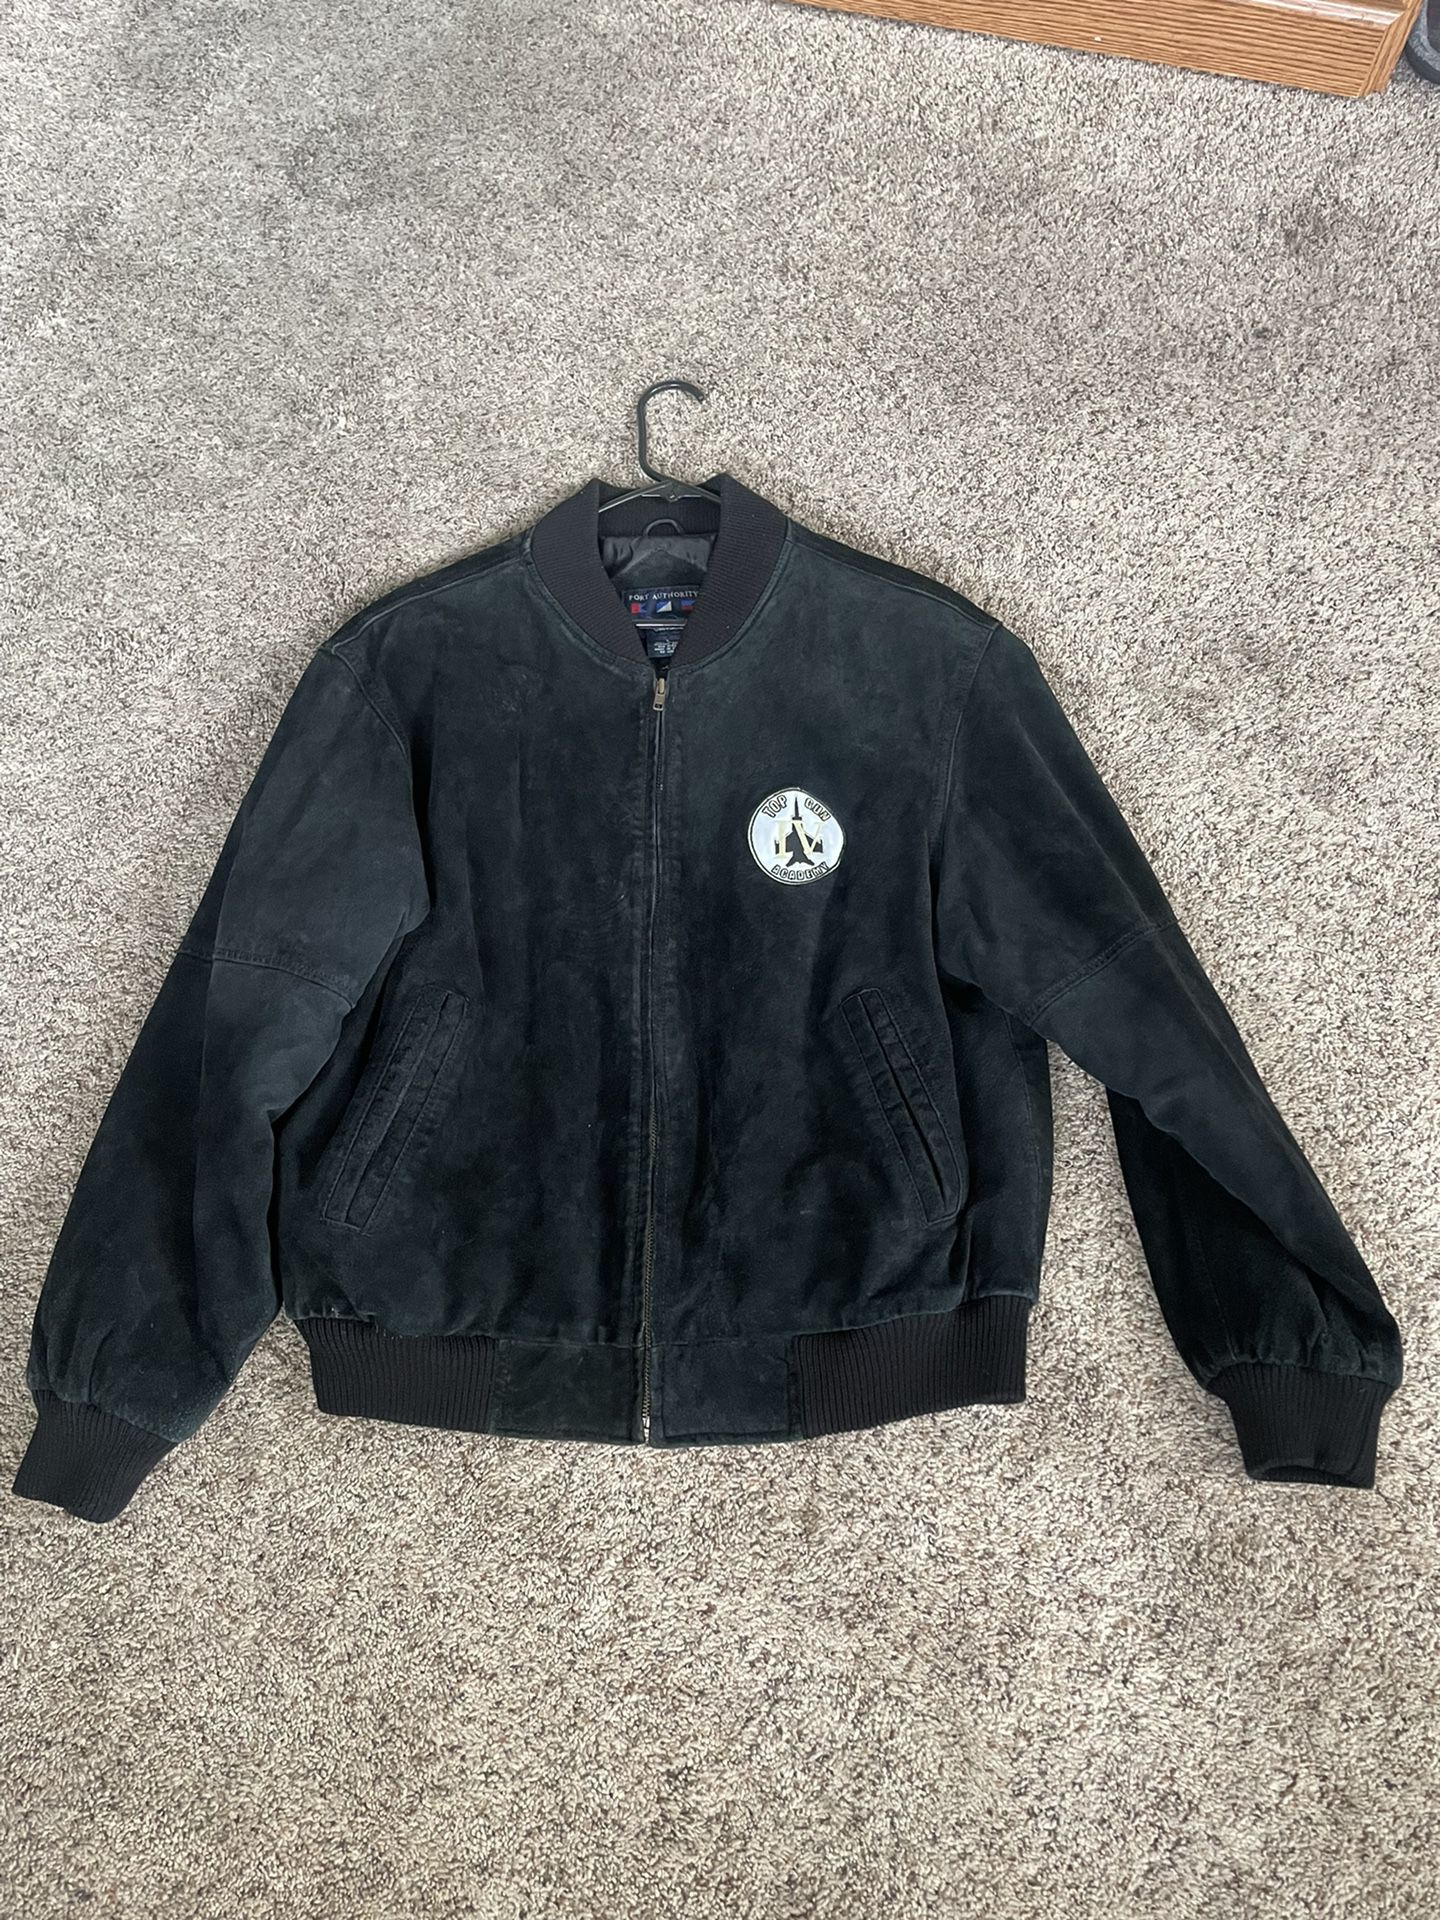 Large Black Leather Jacket